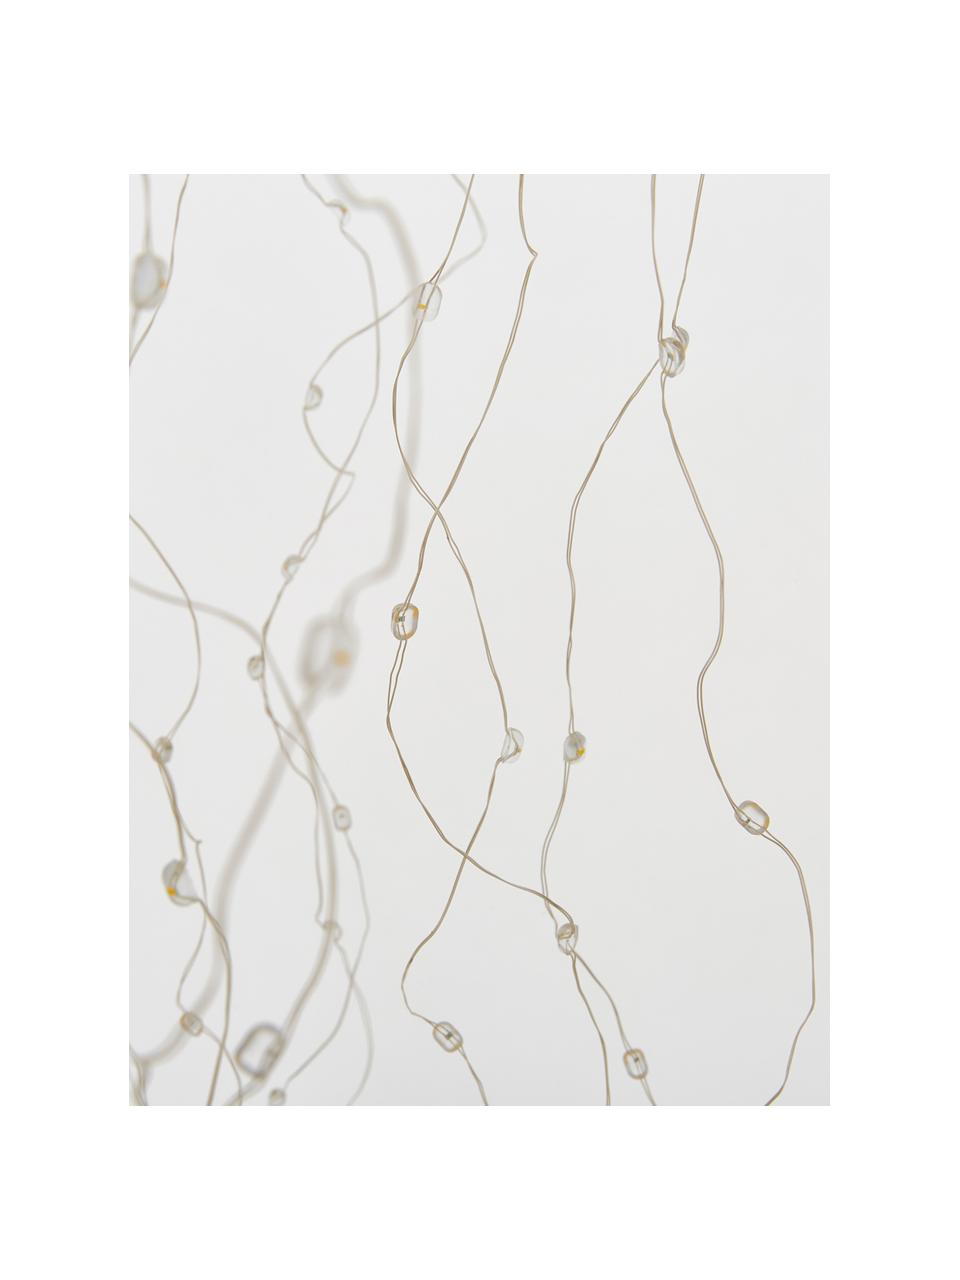 Lampa dekoracyjna LED Medusa, Metal powlekany, Biały, odcienie srebrnego, Ø 68 x W 100 cm